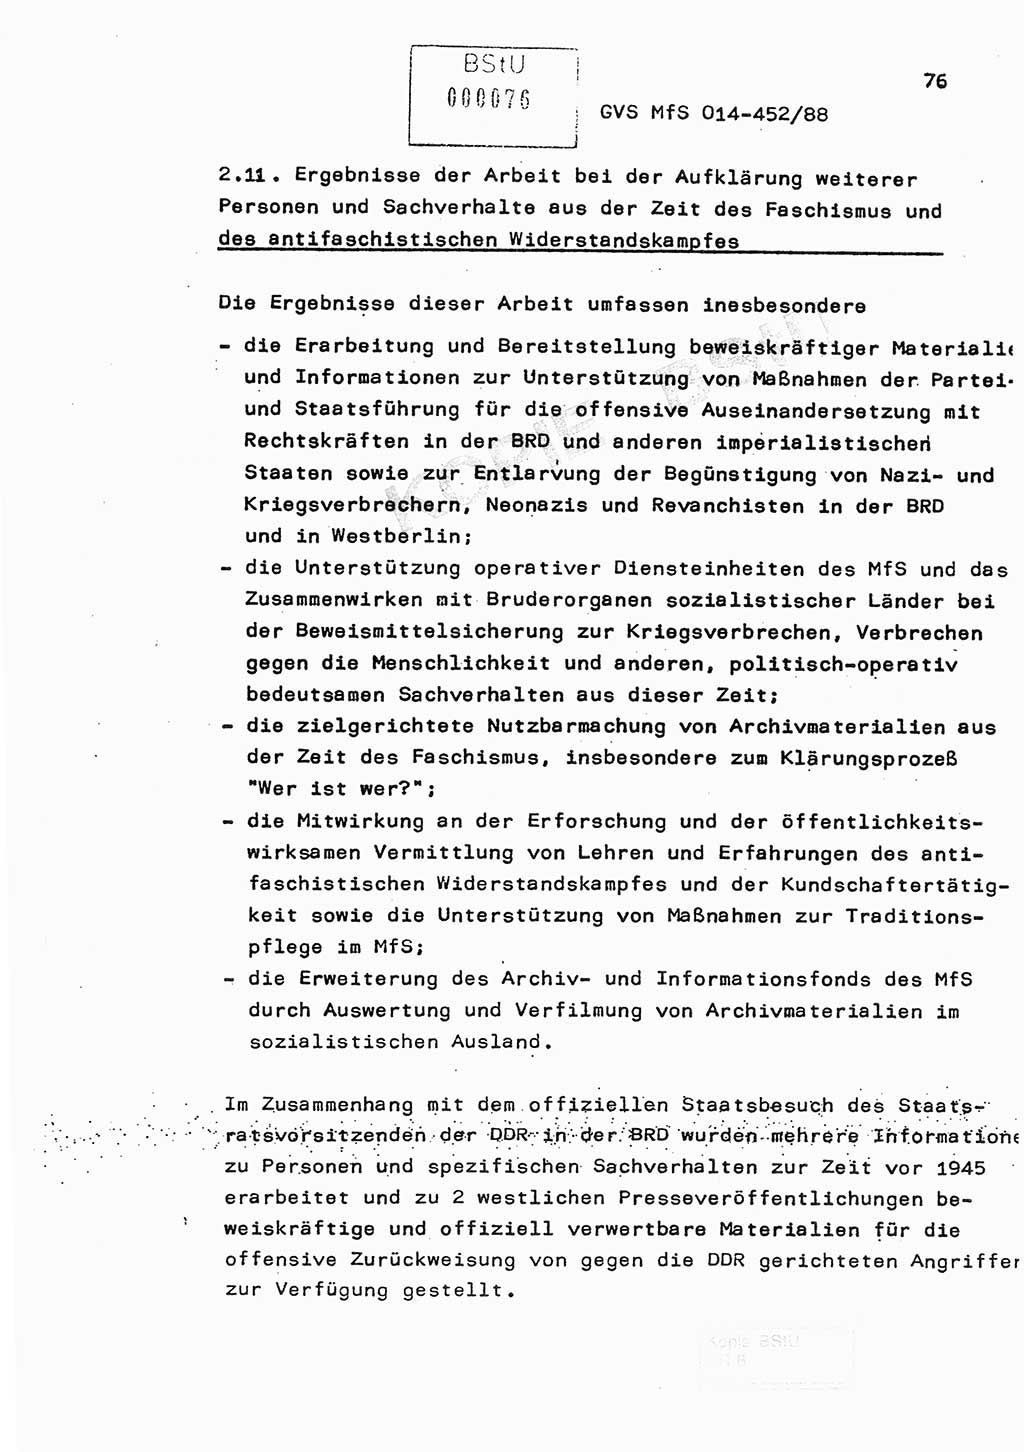 Jahresbericht der Hauptabteilung (HA) Ⅸ 1987, Einschätzung der Wirksamkeit der Untersuchungsarbeit im Jahre 1987, Ministerium für Staatssicherheit (MfS) der Deutschen Demokratischen Republik (DDR), Hauptabteilung Ⅸ, Geheime Verschlußsache (GVS) o014-452/88, Berlin 1988, Seite 76 (Einsch. MfS DDR HA Ⅸ GVS o014-452/88 1987, S. 76)